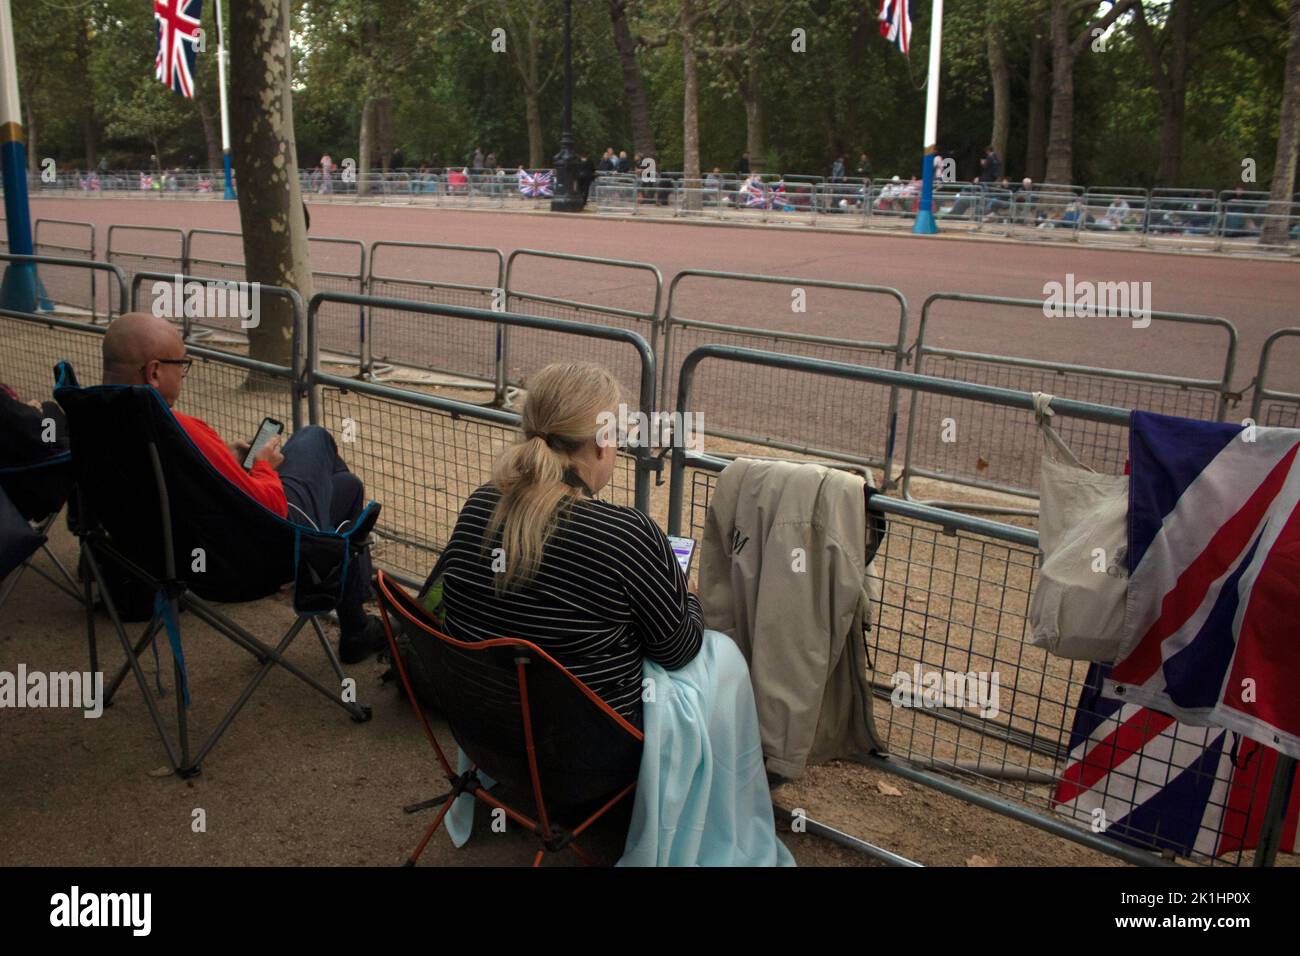 Les gens ont campé le long du Mall la nuit avant les funérailles de la Reine, 18 septembre 2022 Londres Royaume-Uni Banque D'Images